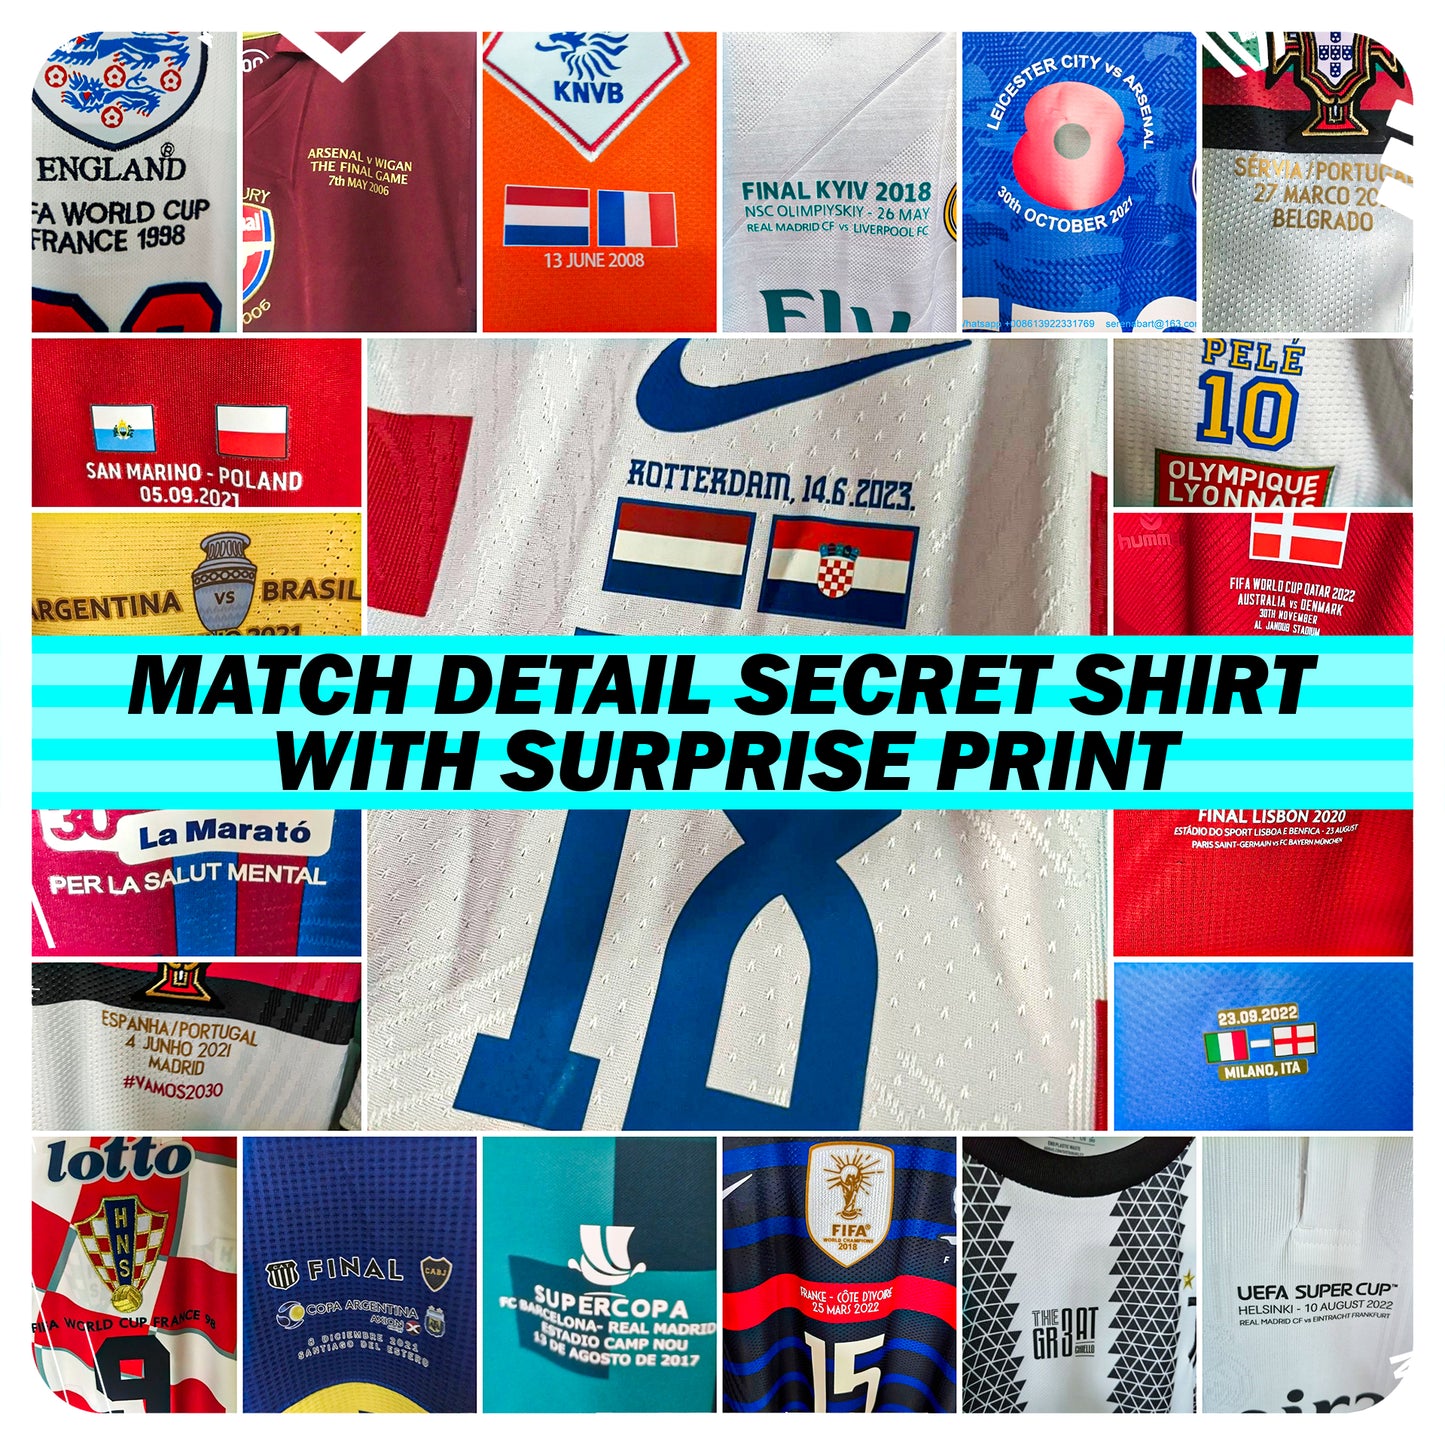 Match Detail Secret Shirt With Surprise Print